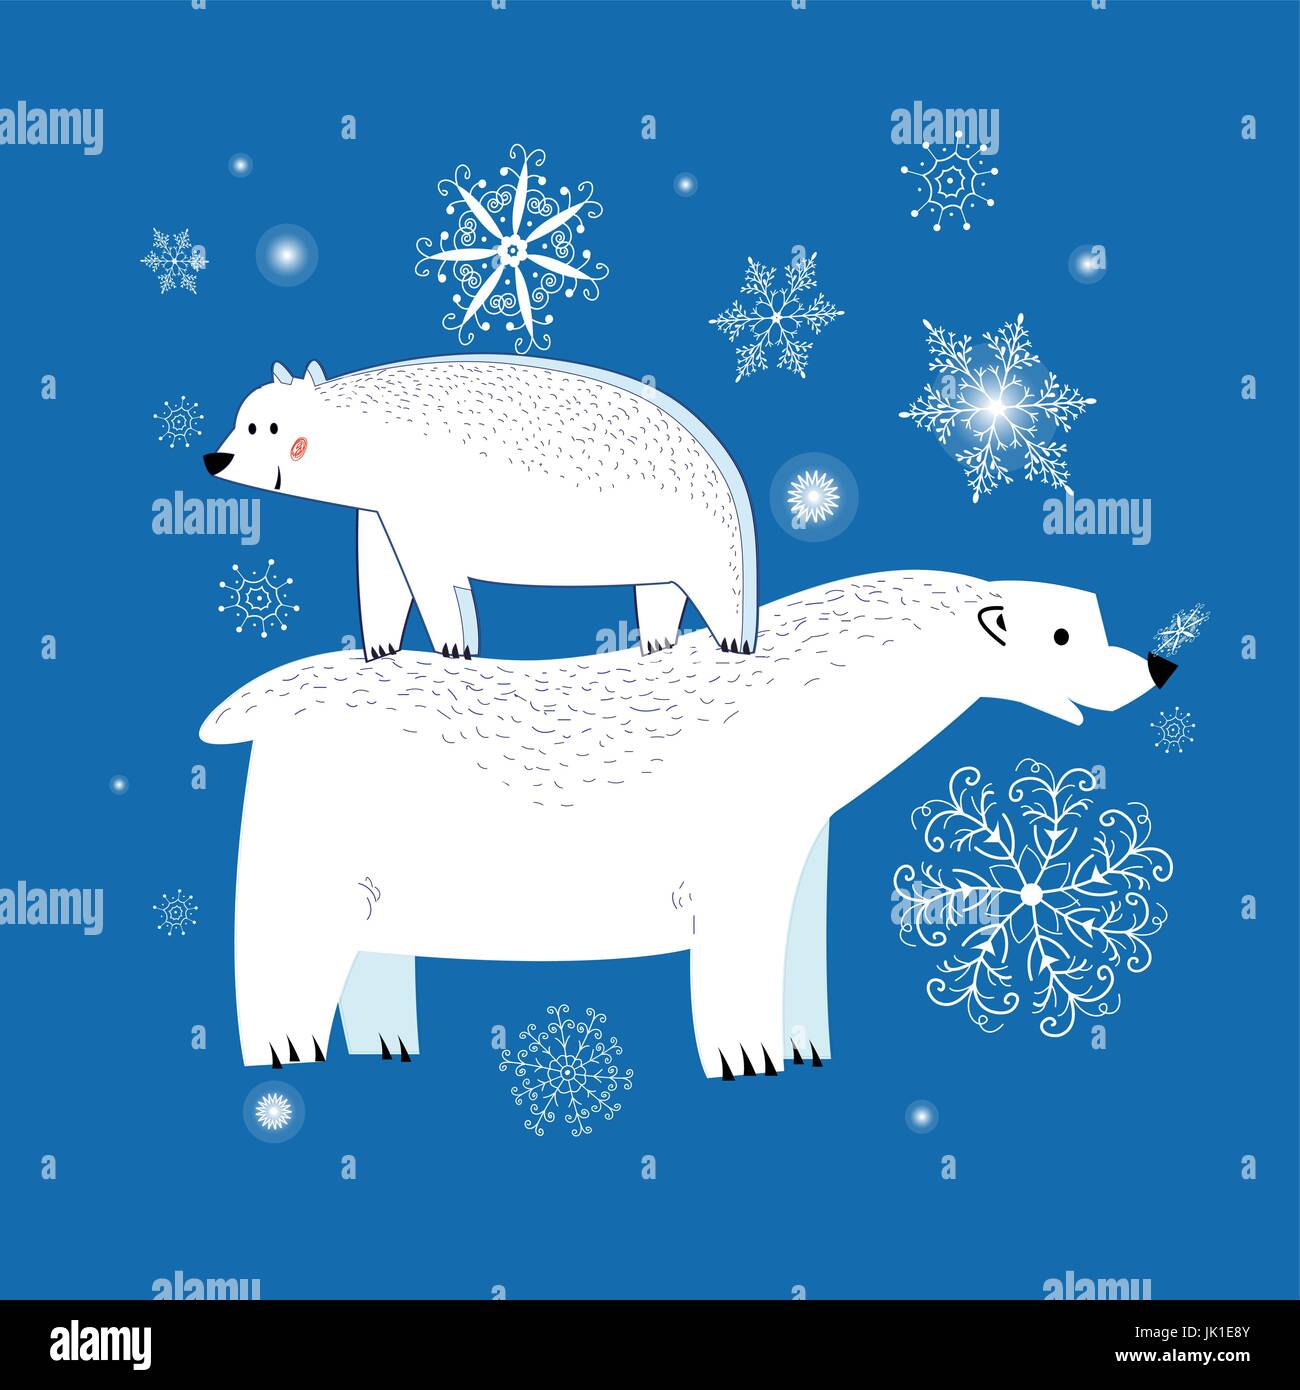 Festliche Weihnachts-Grußkarte mit Eisbären Stock Vektor